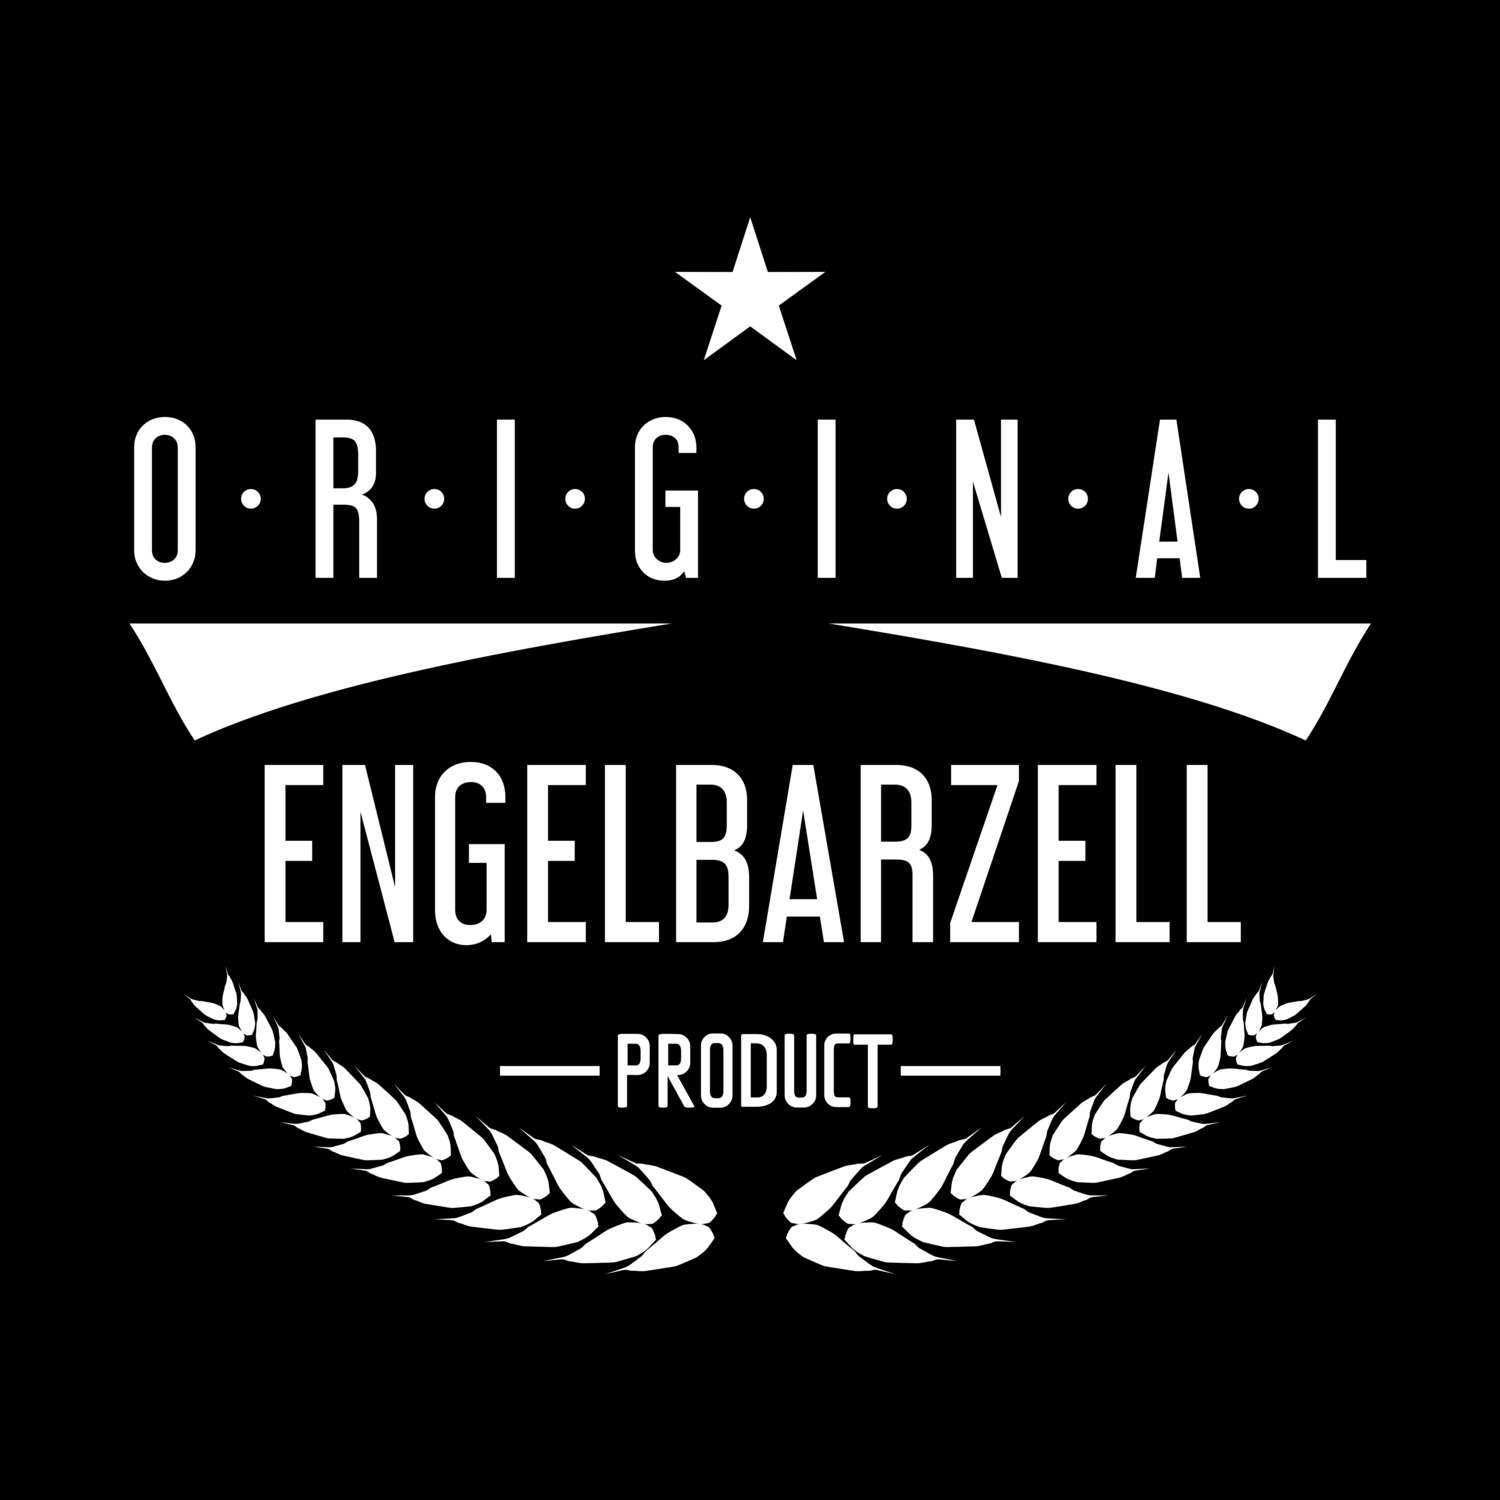 Engelbarzell T-Shirt »Original Product«